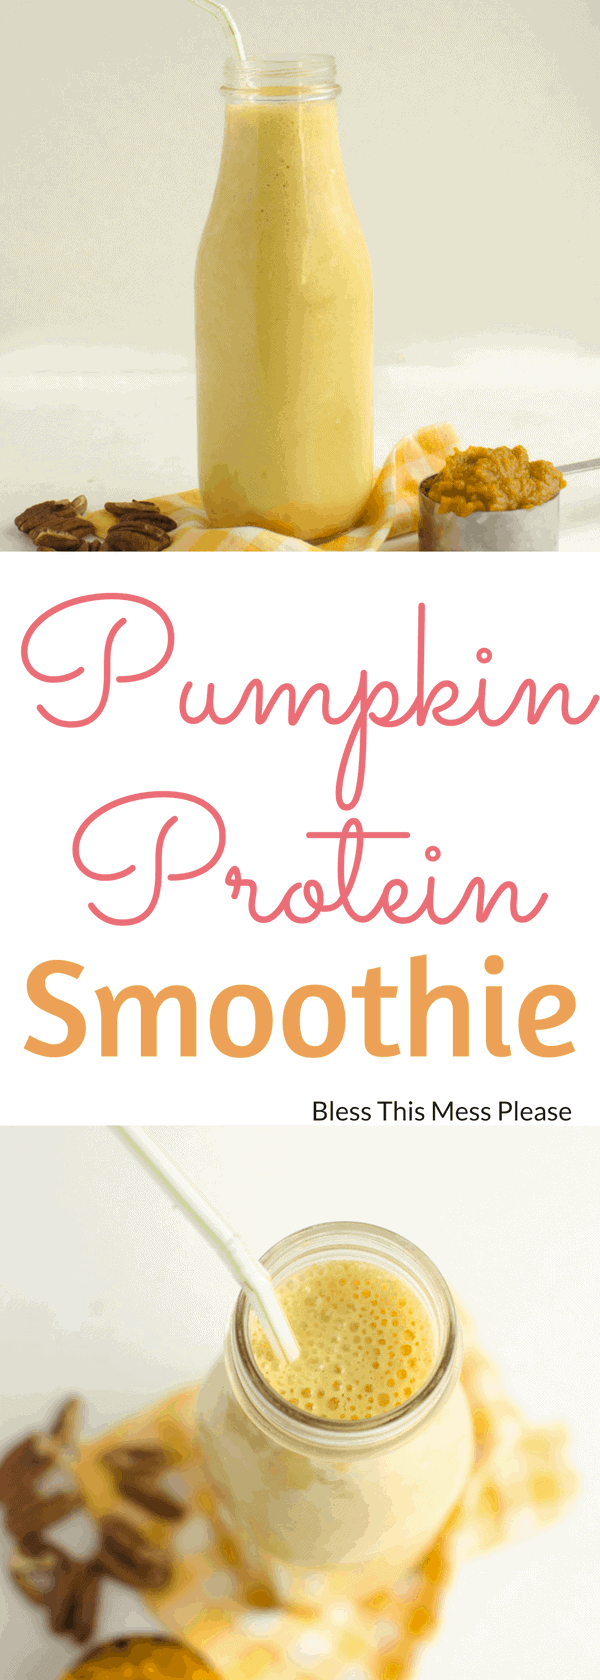 Pumpkin Protein Smoothie